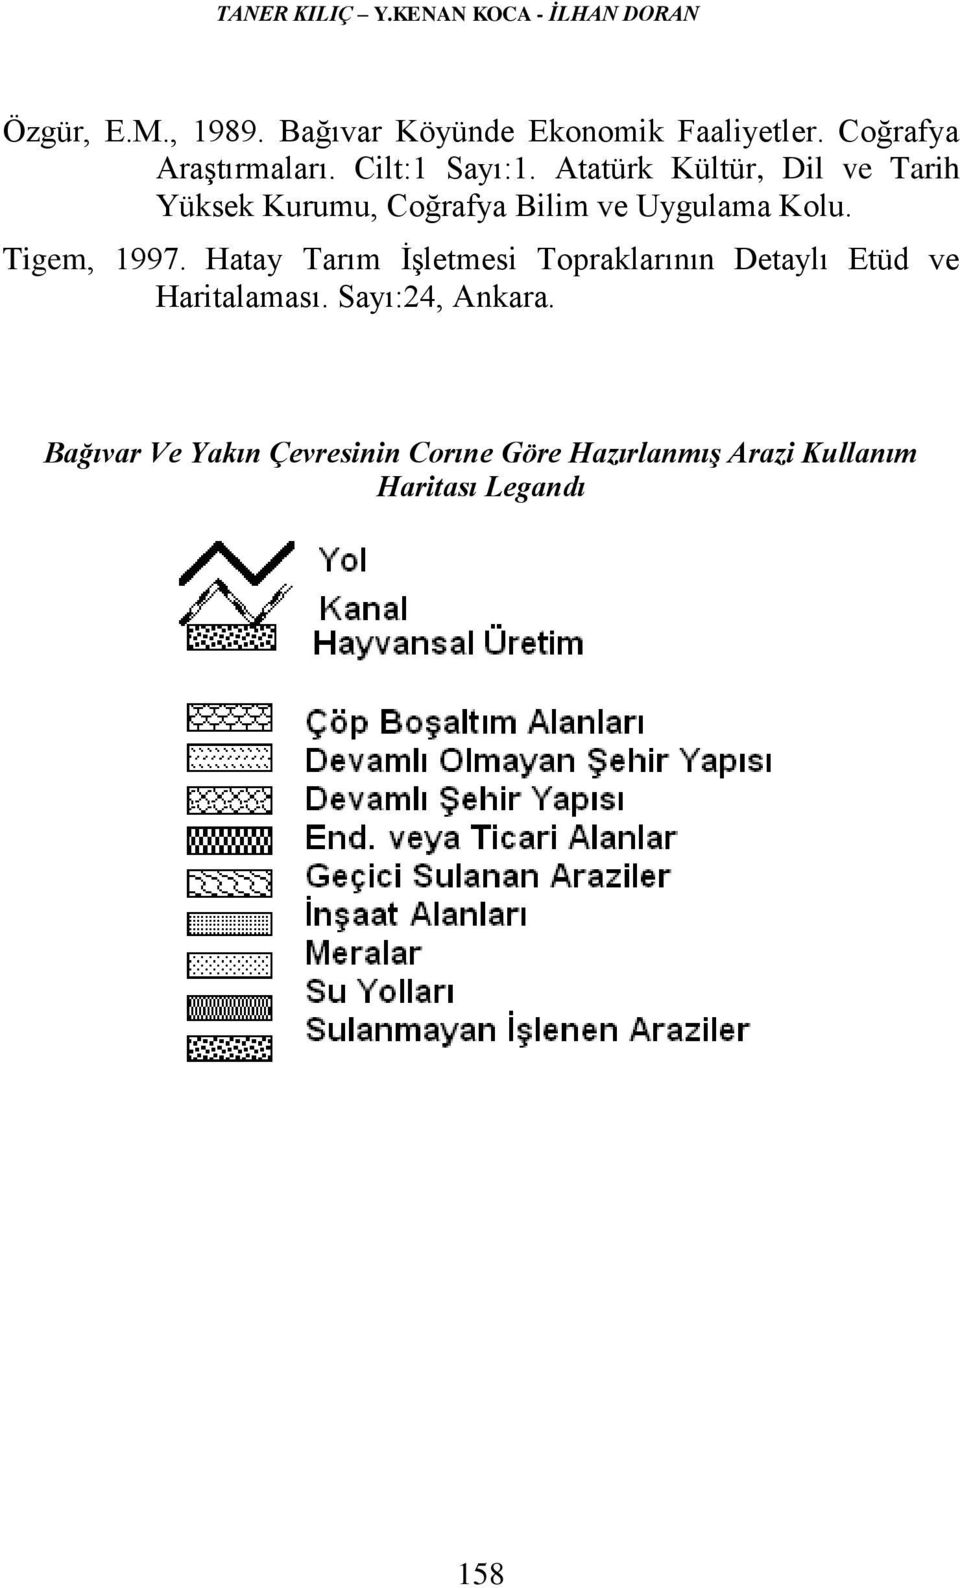 Atatürk Kültür, Dil ve Tarih Yüksek Kurumu, Coğrafya Bilim ve Uygulama Kolu. Tigem, 1997.